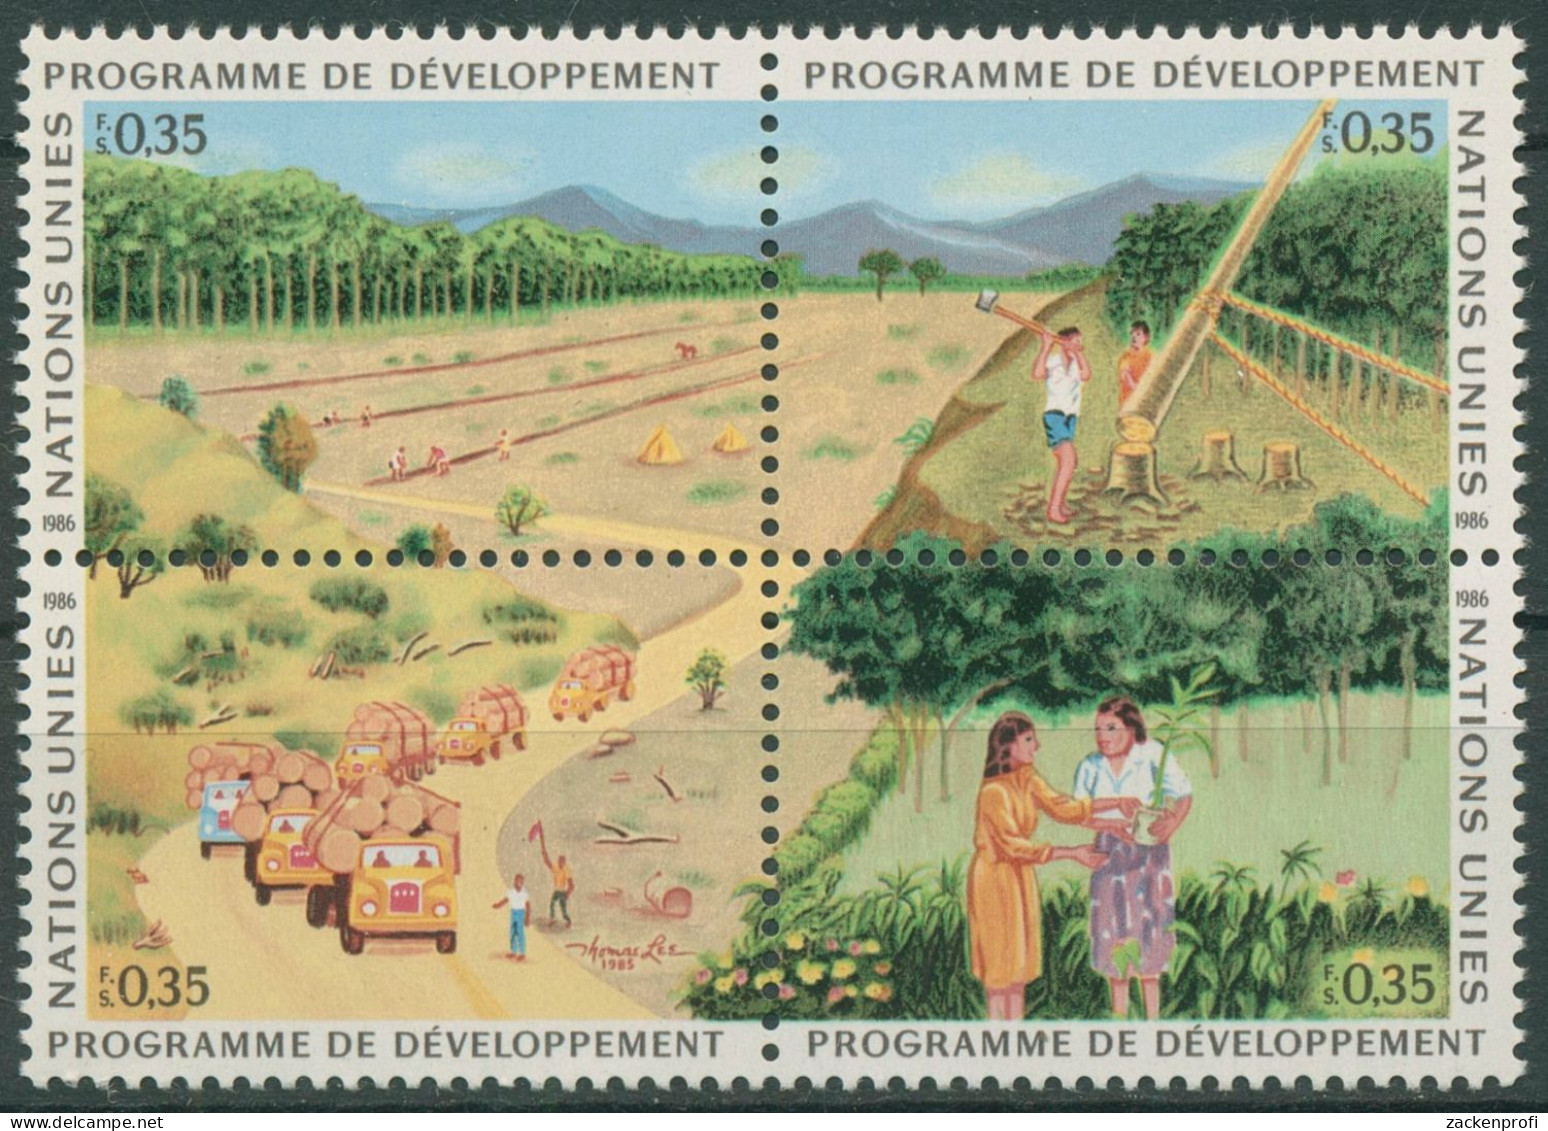 UNO Genf 1986 Entwicklungsprogramm Wald Aufforstung 138/41 ZD Postfrisch - Unused Stamps